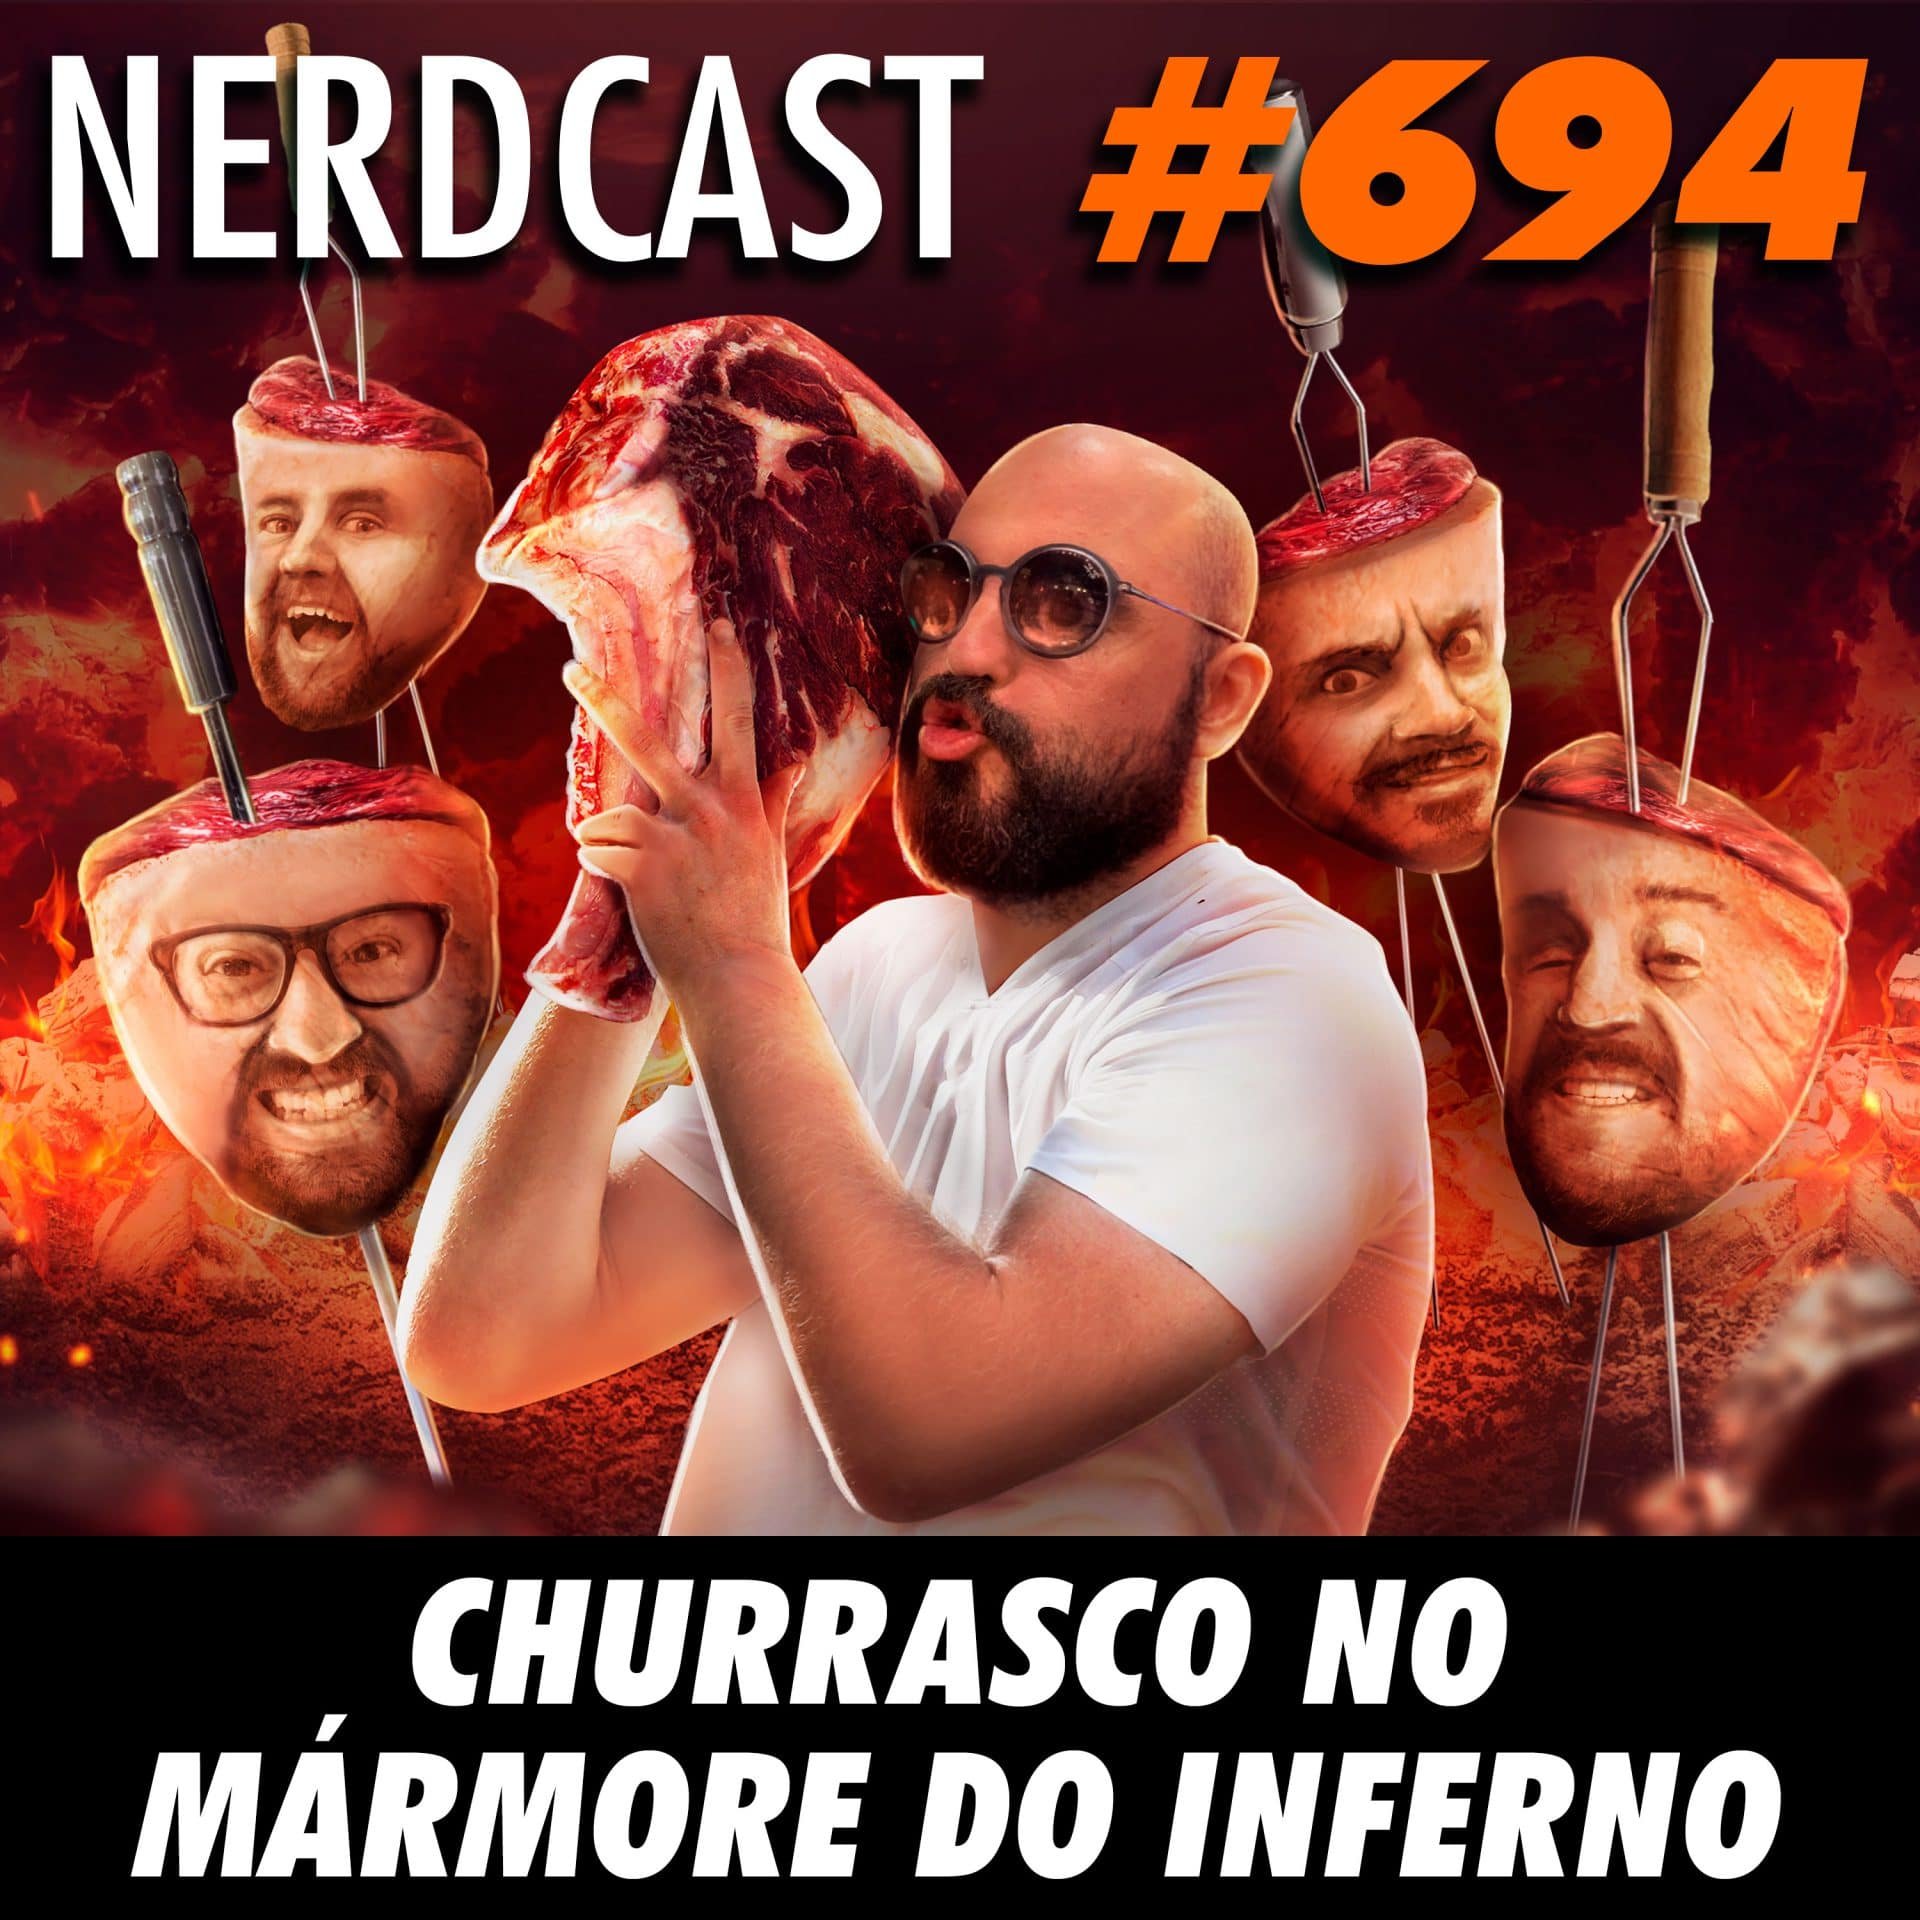 NerdCast 694 - Churrasco no mármore do inferno